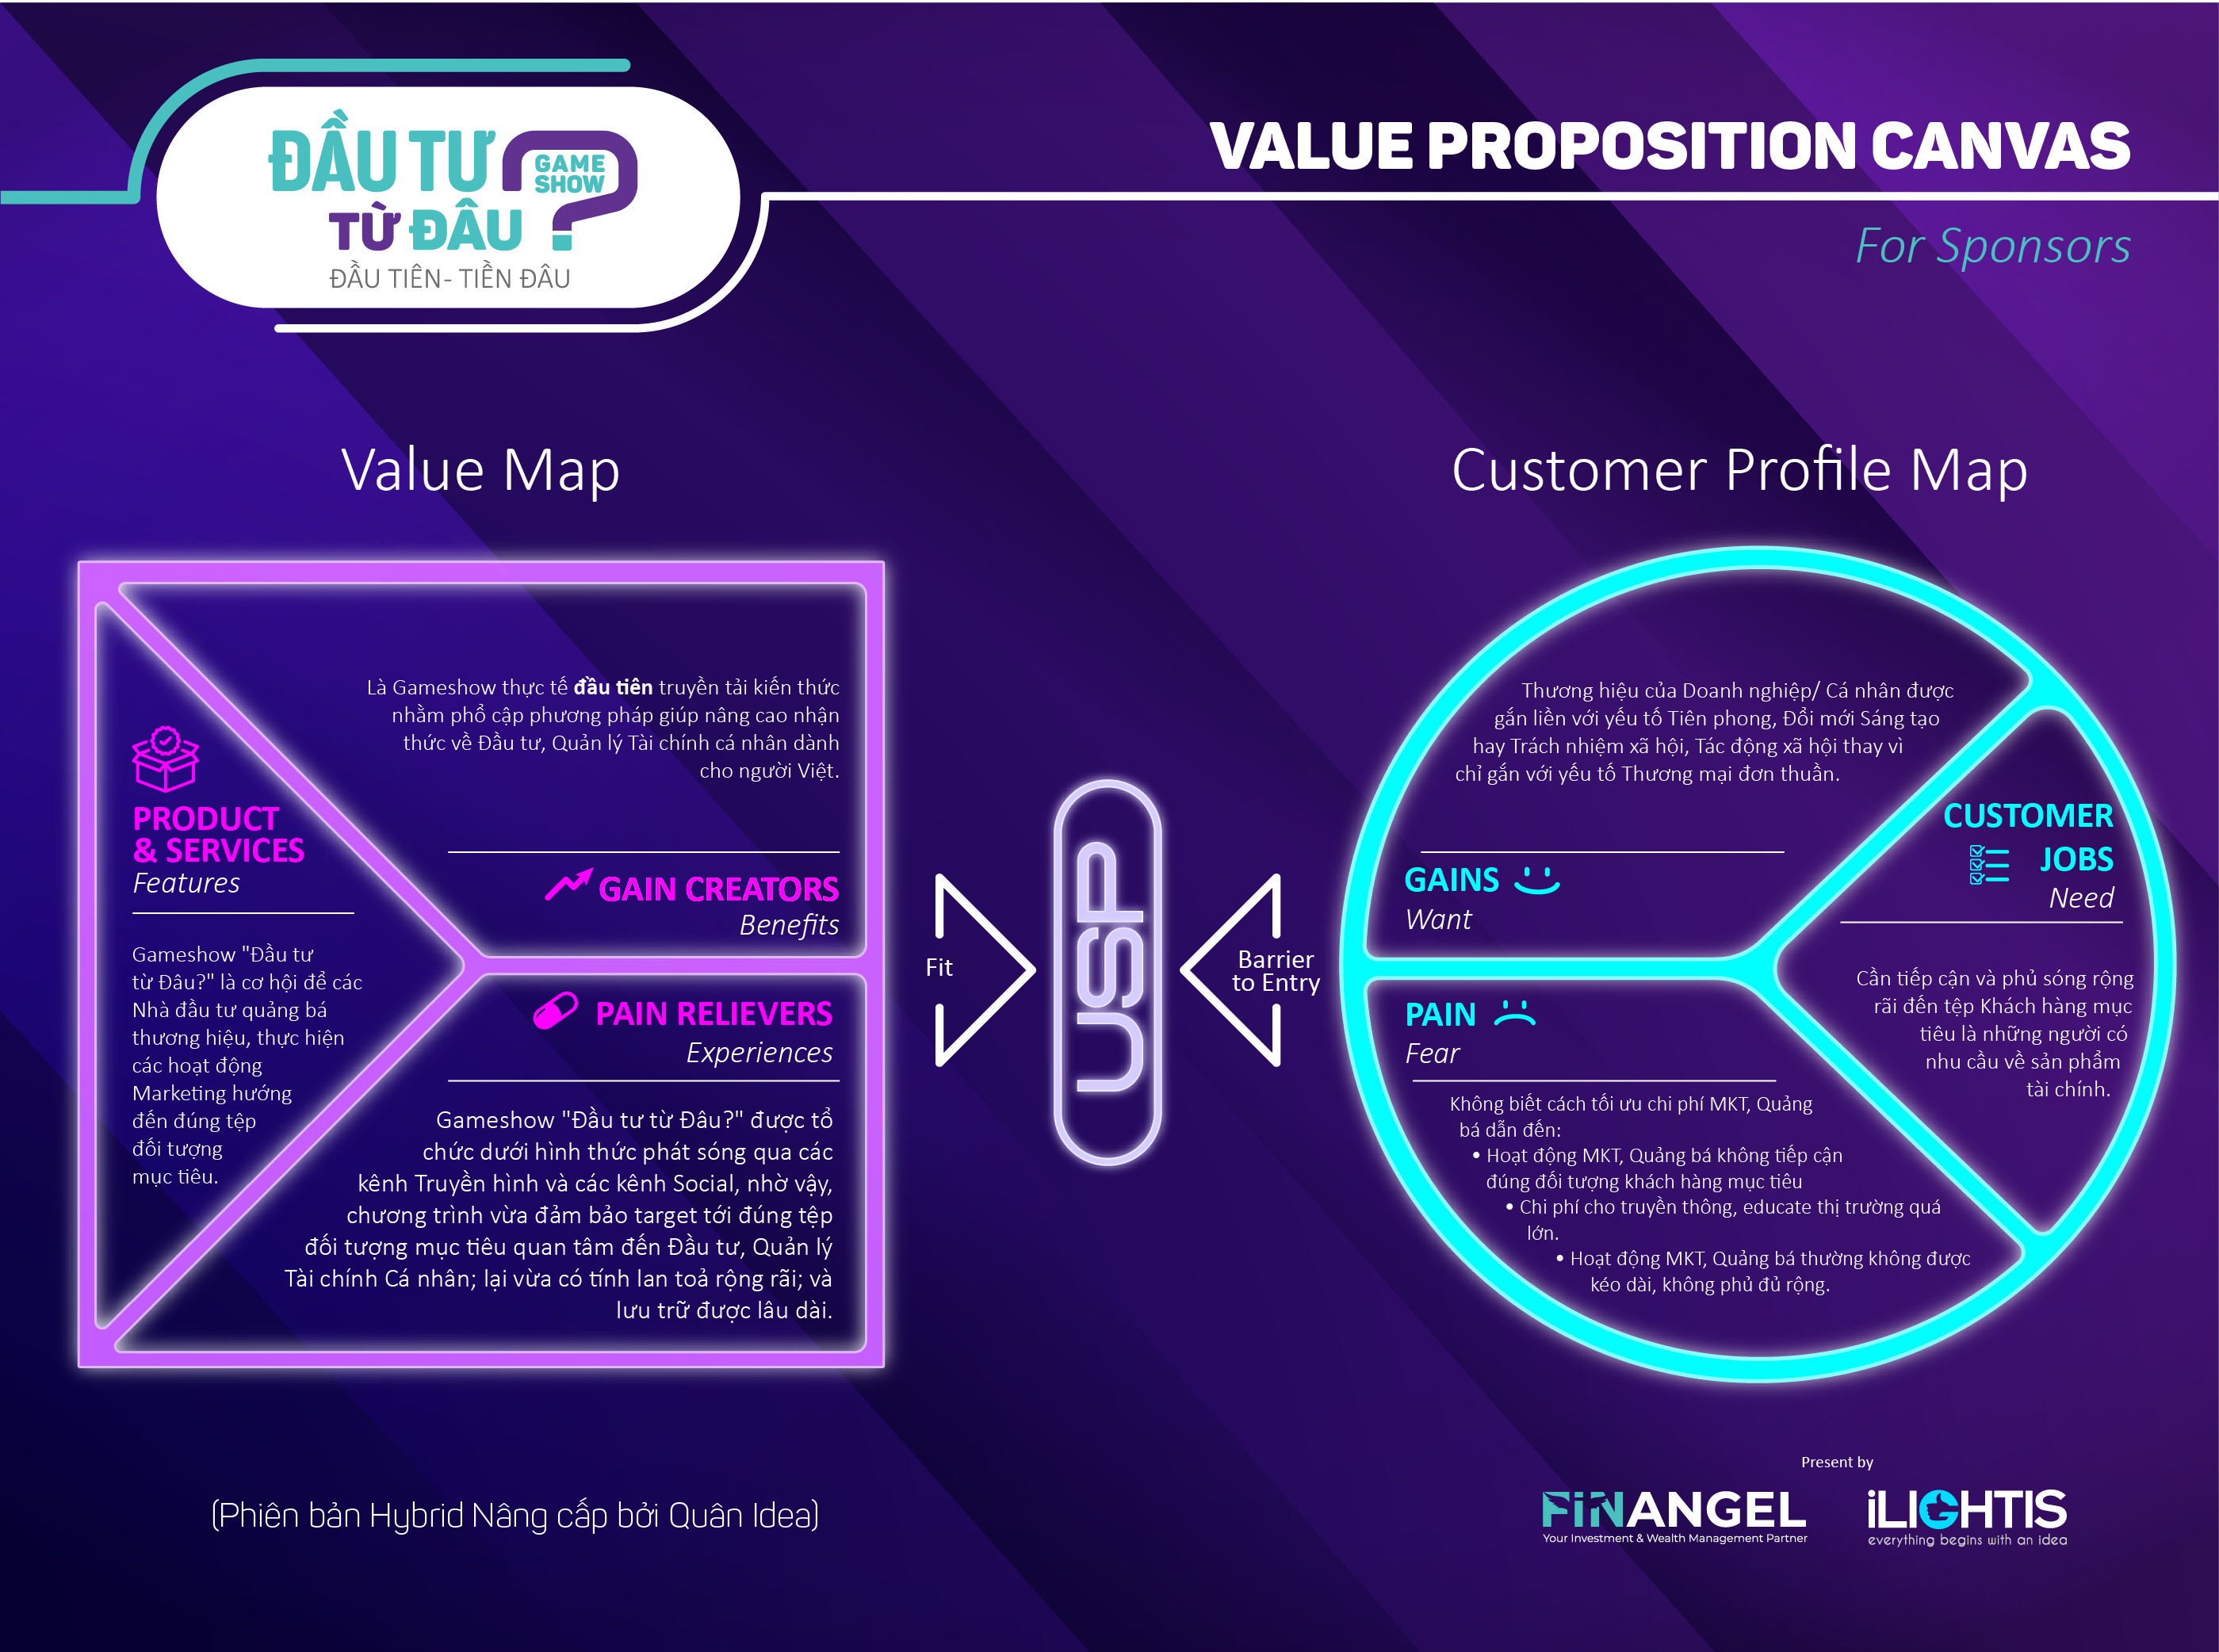 Gameshow Đầu tư từ Đâu – Value Proposition Canvas for Sponsors